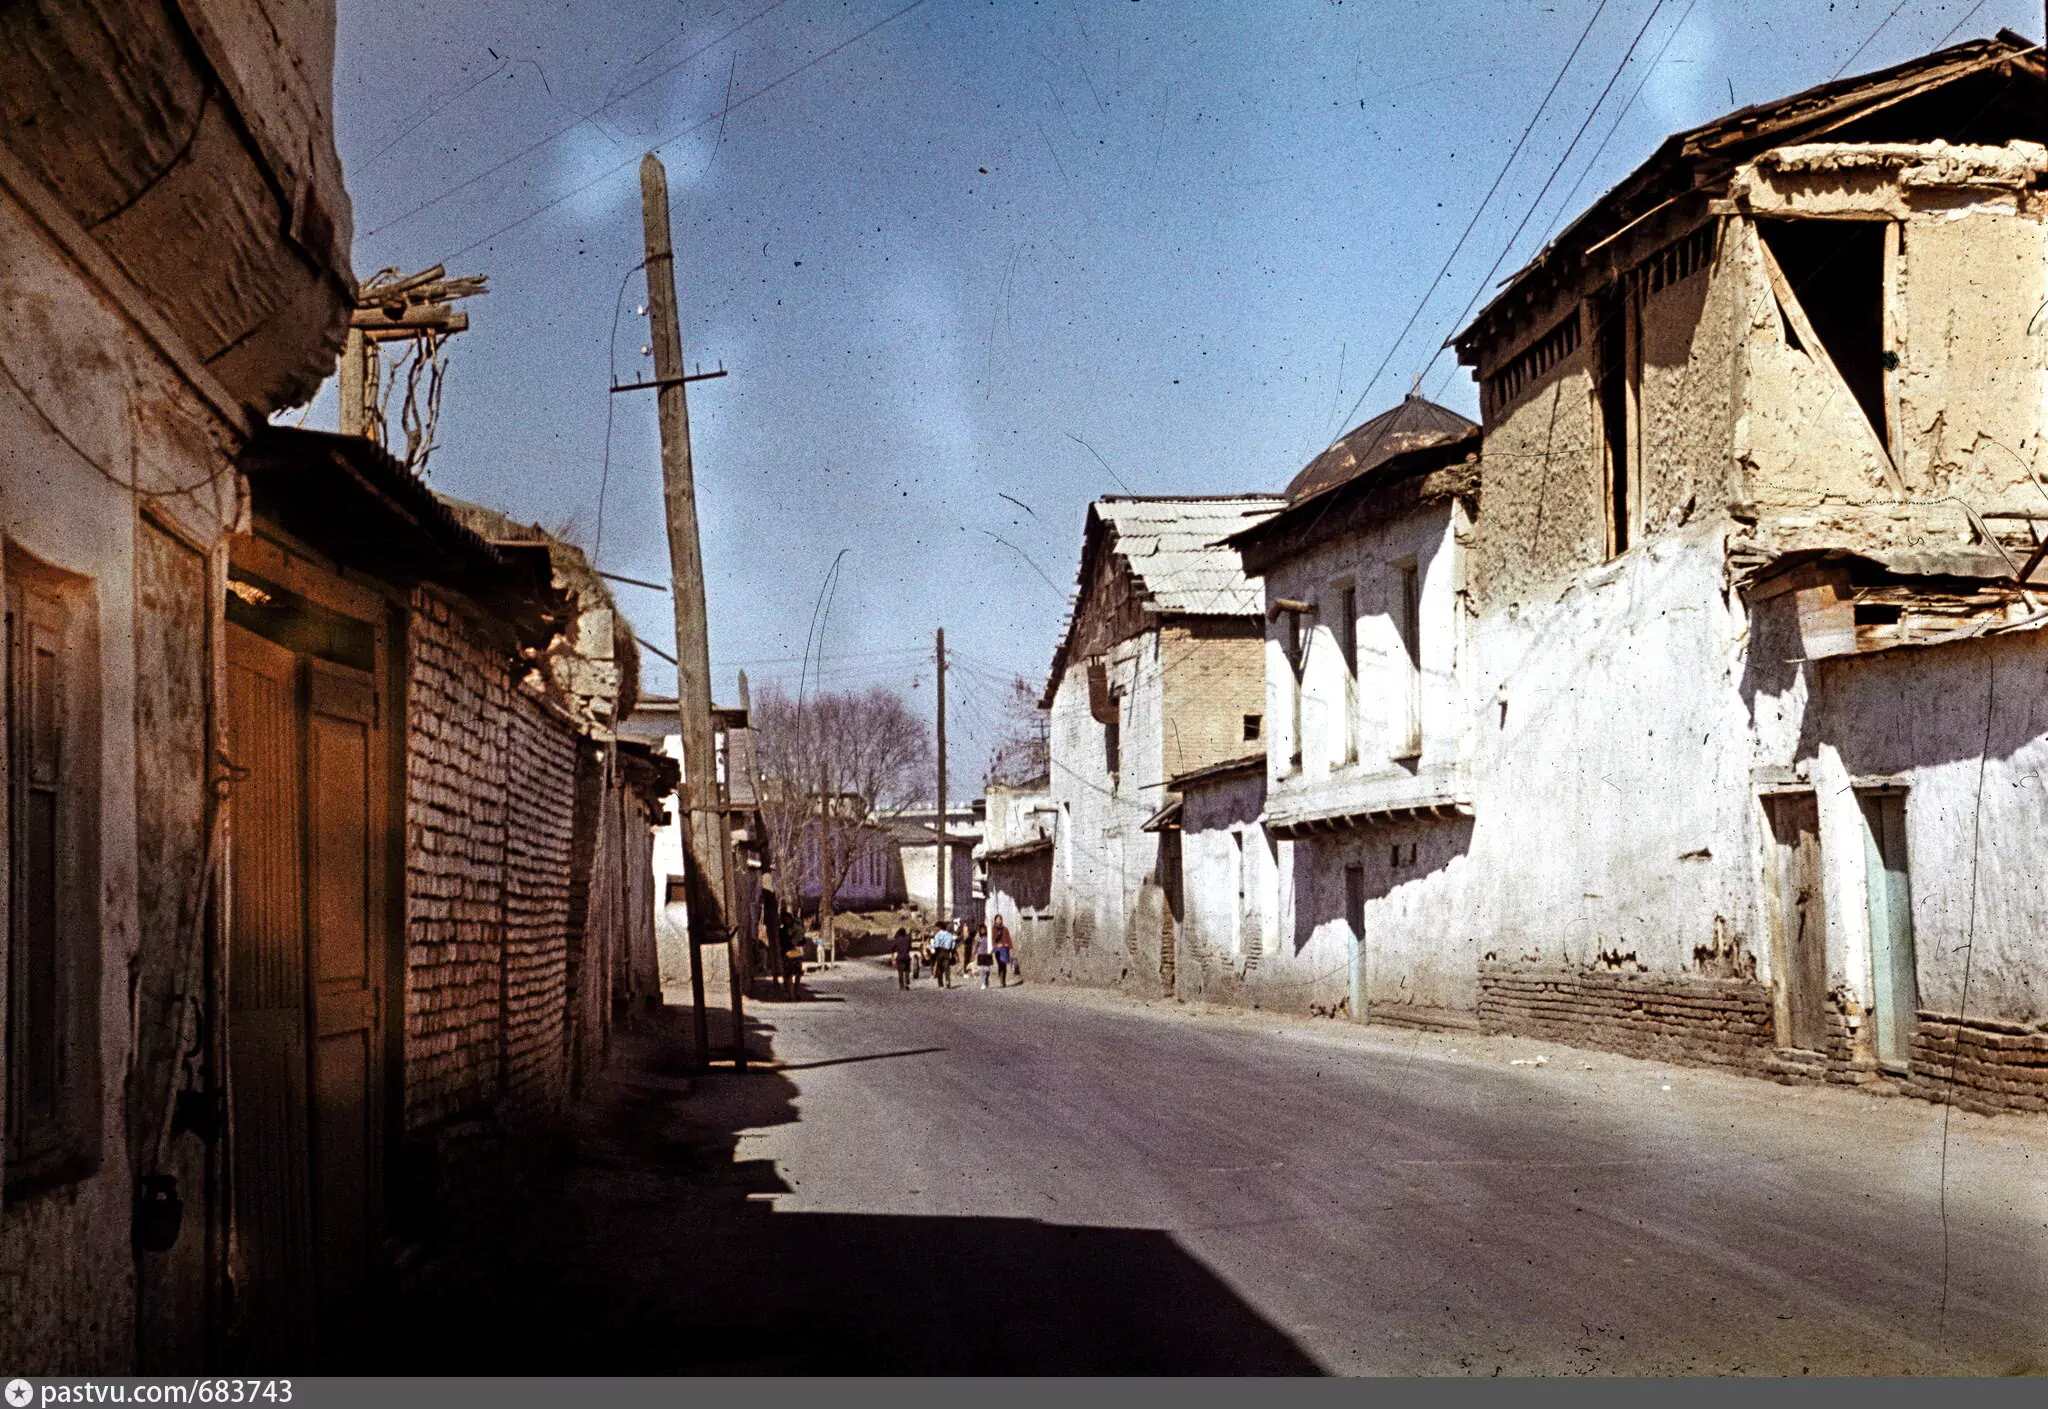 Ташкент старый город 1970